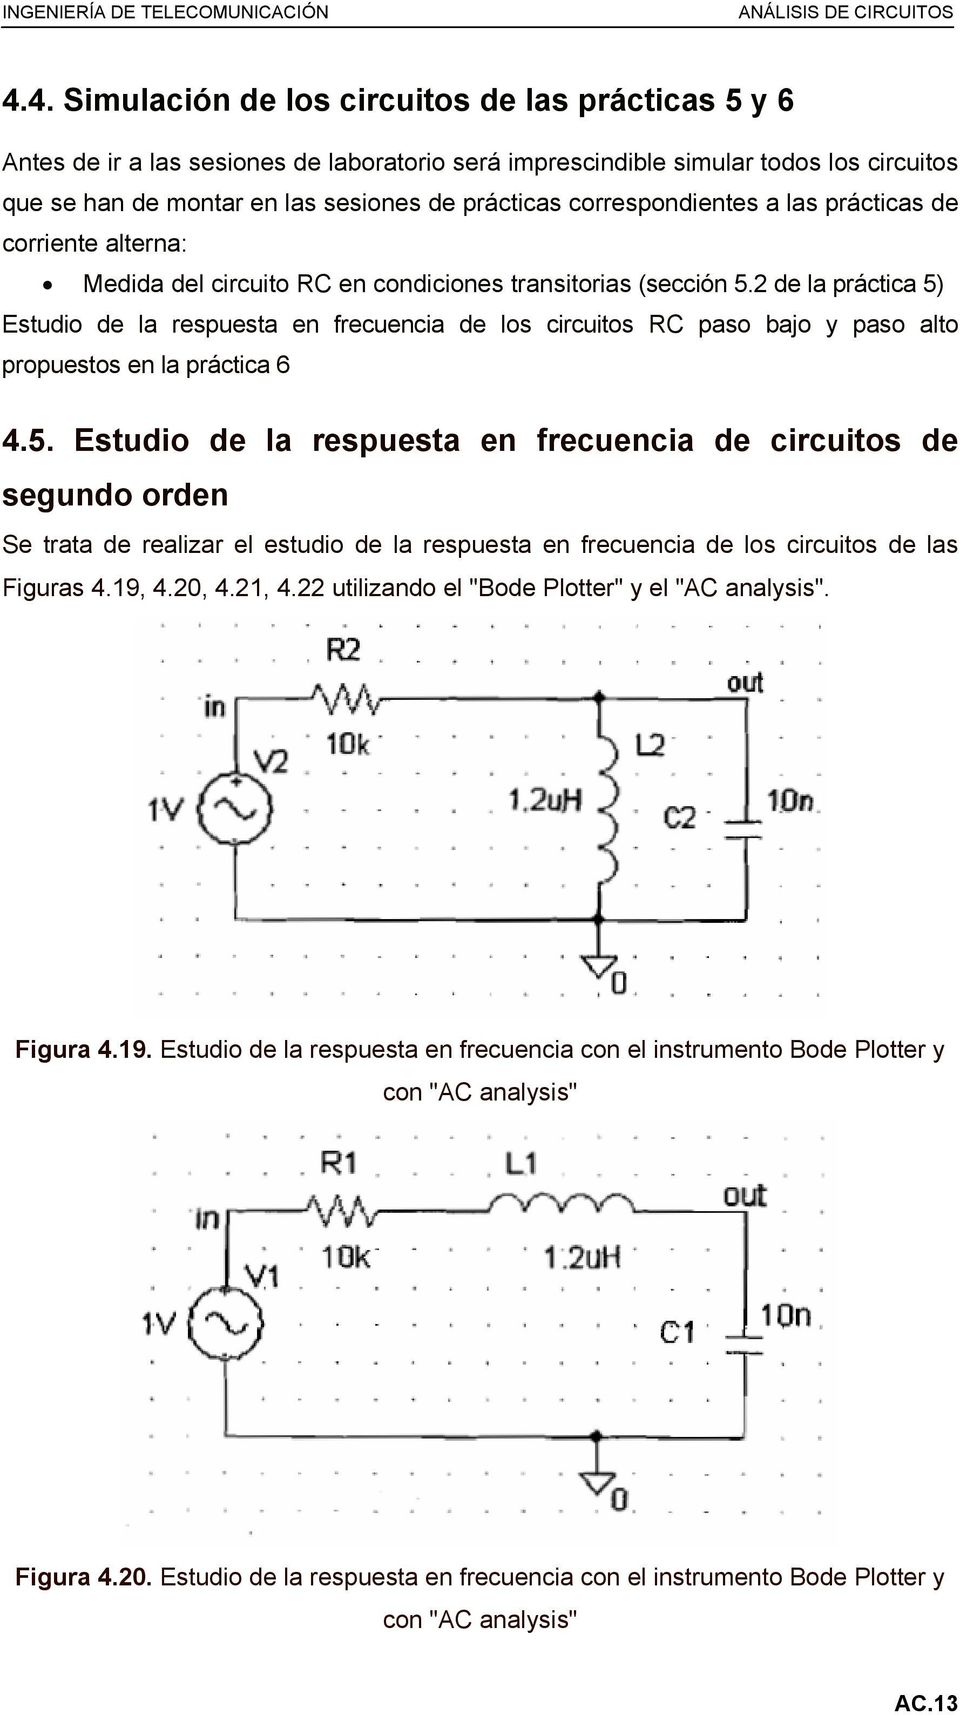 2 de la práctica 5) Estudio de la respuesta en frecuencia de los circuitos RC paso bajo y paso alto propuestos en la práctica 6 4.5. Estudio de la respuesta en frecuencia de circuitos de segundo orden Se trata de realizar el estudio de la respuesta en frecuencia de los circuitos de las Figuras 4.